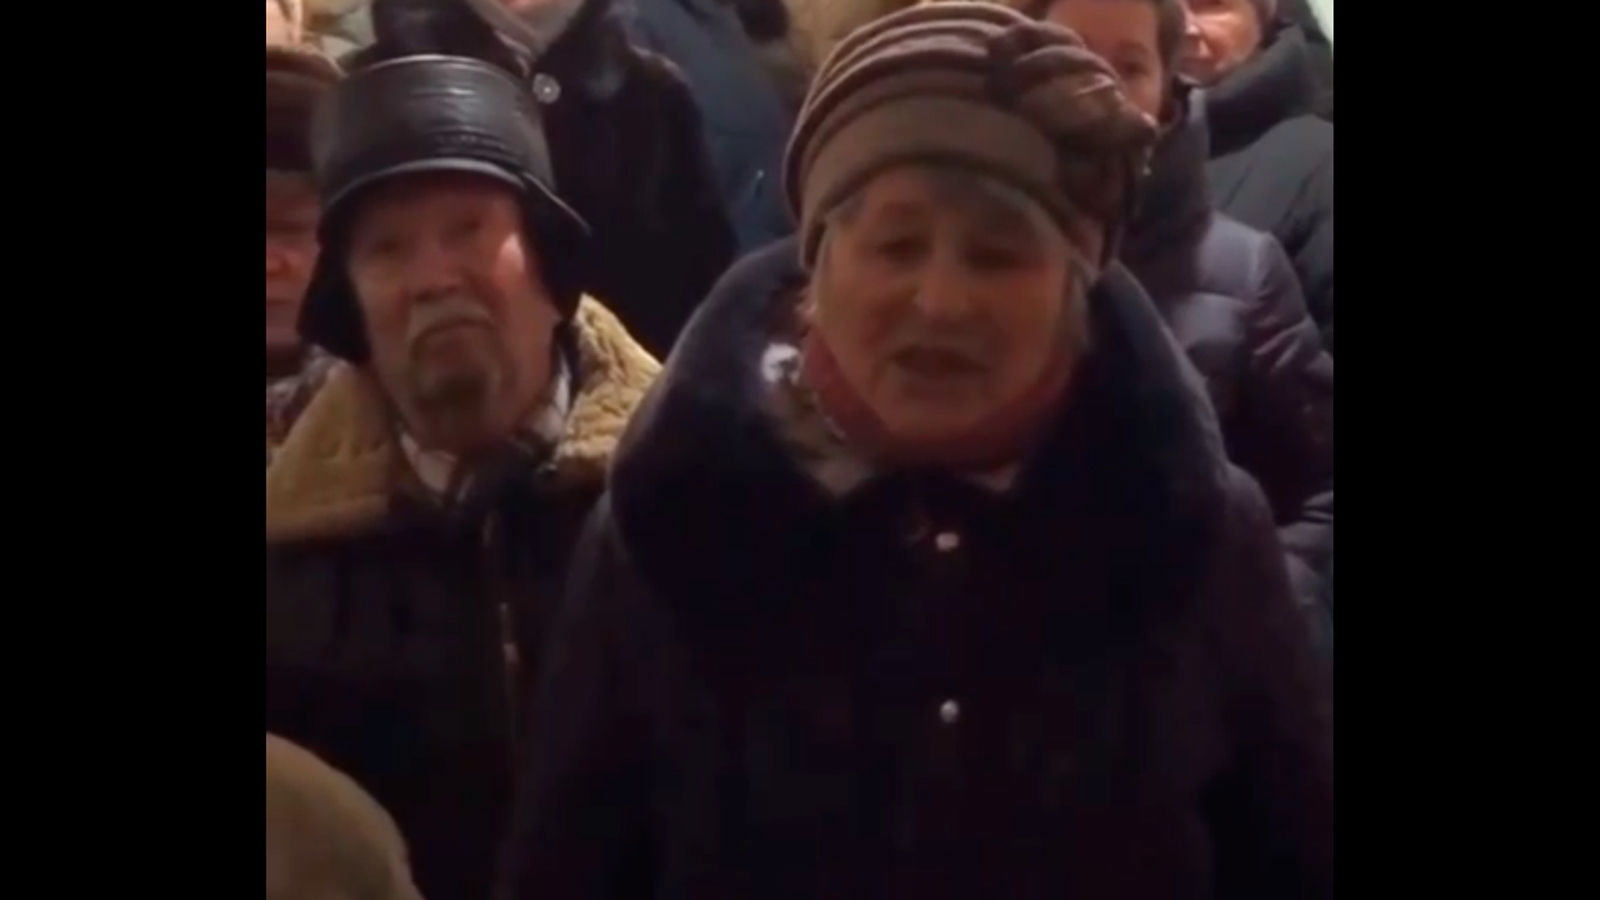 "Відчуття, що Воскресенськ хочуть стерти з лиця землі", – жителі міста, що замерзає, звернулися до Путіна